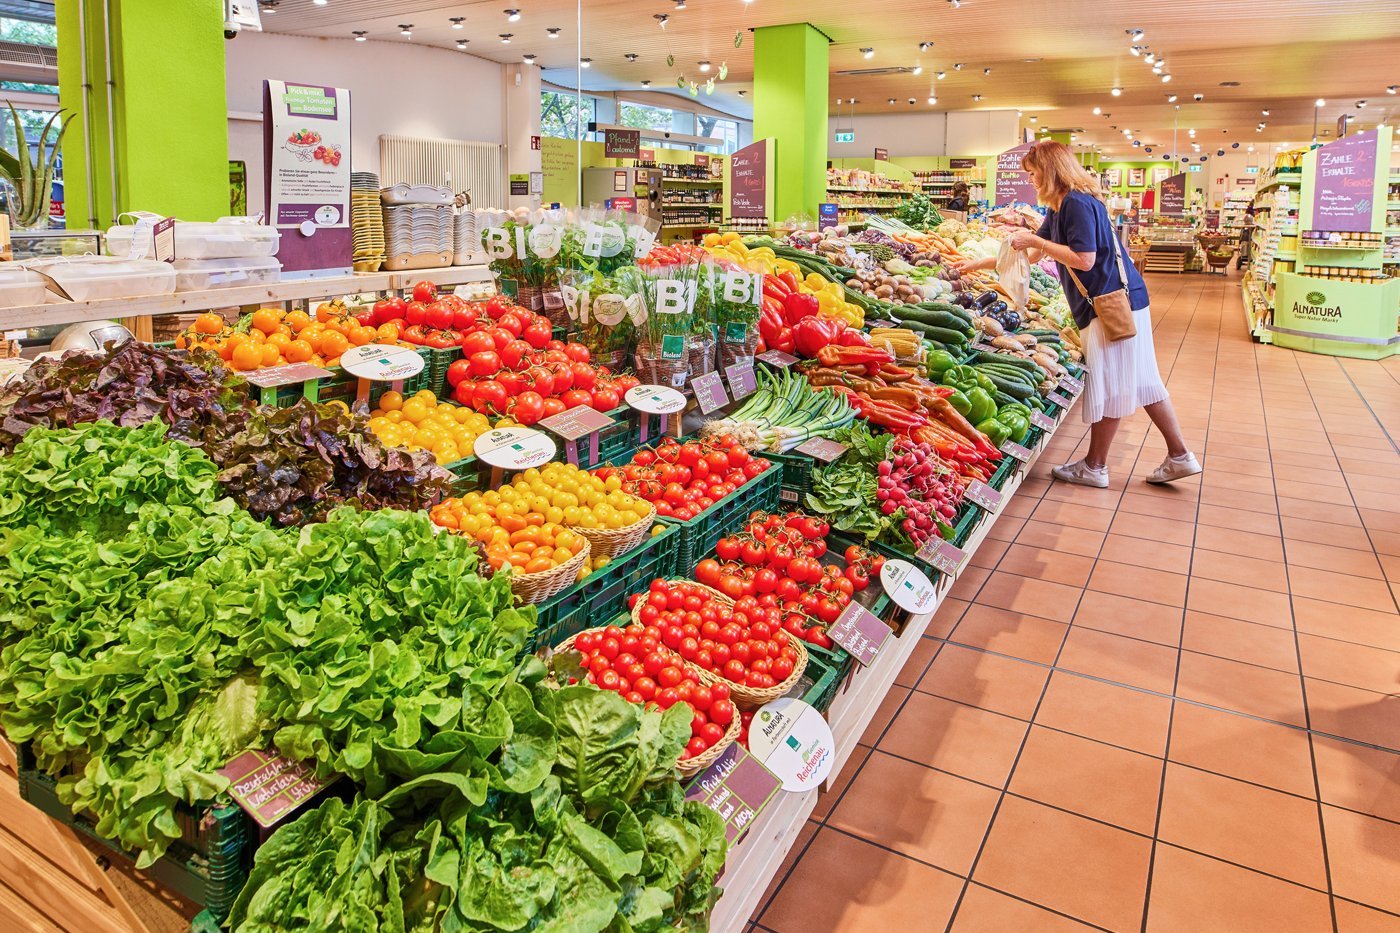 Frau kauft frisches Gemüse im Bio-Supermarkt ein.